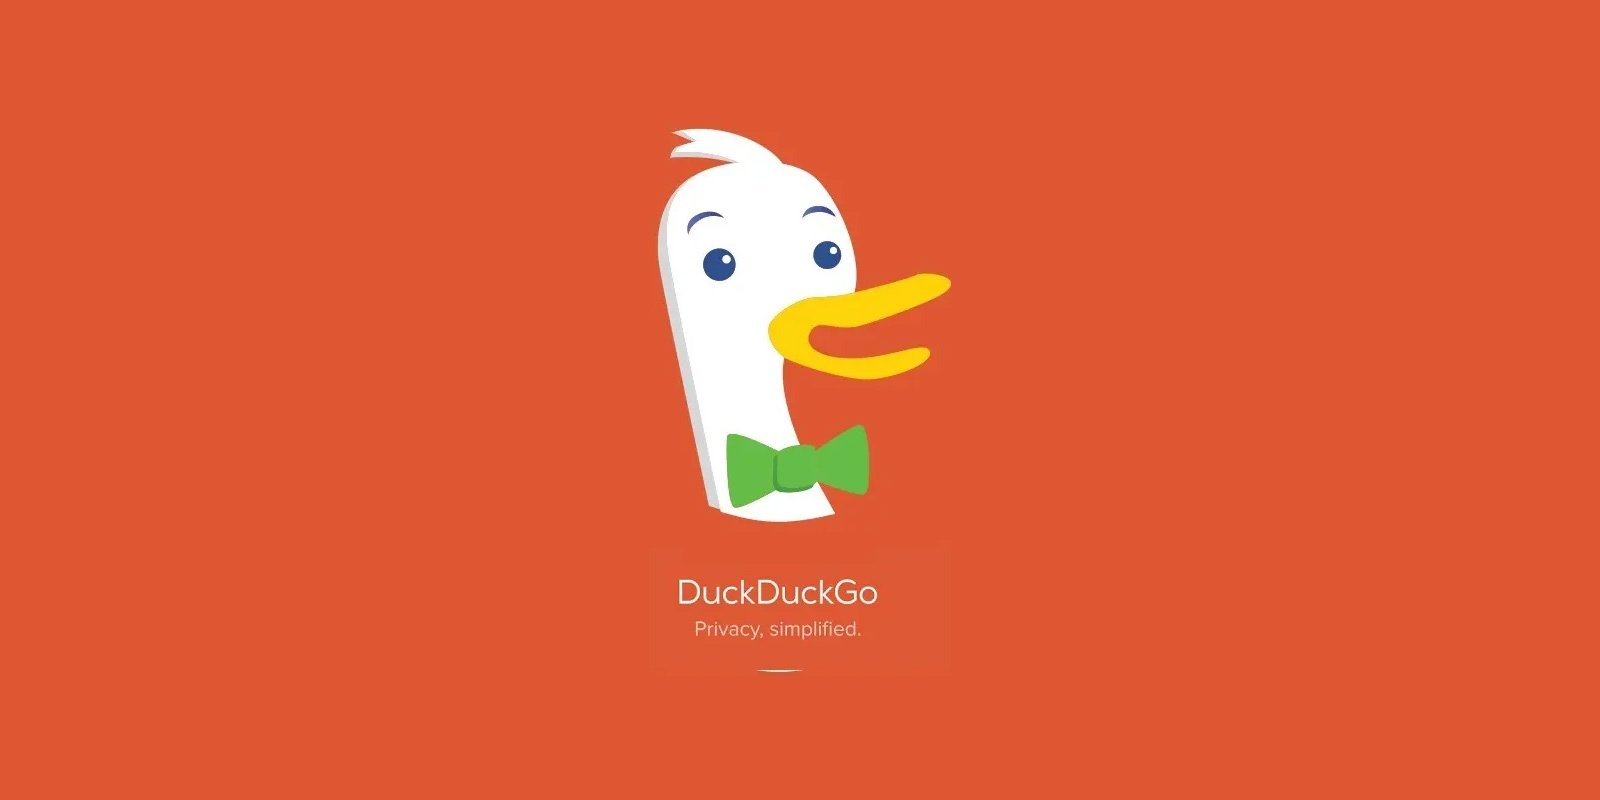 DuckDuckGo phát triển ấn tượng với mức tăng trưởng 46% so với năm 2020